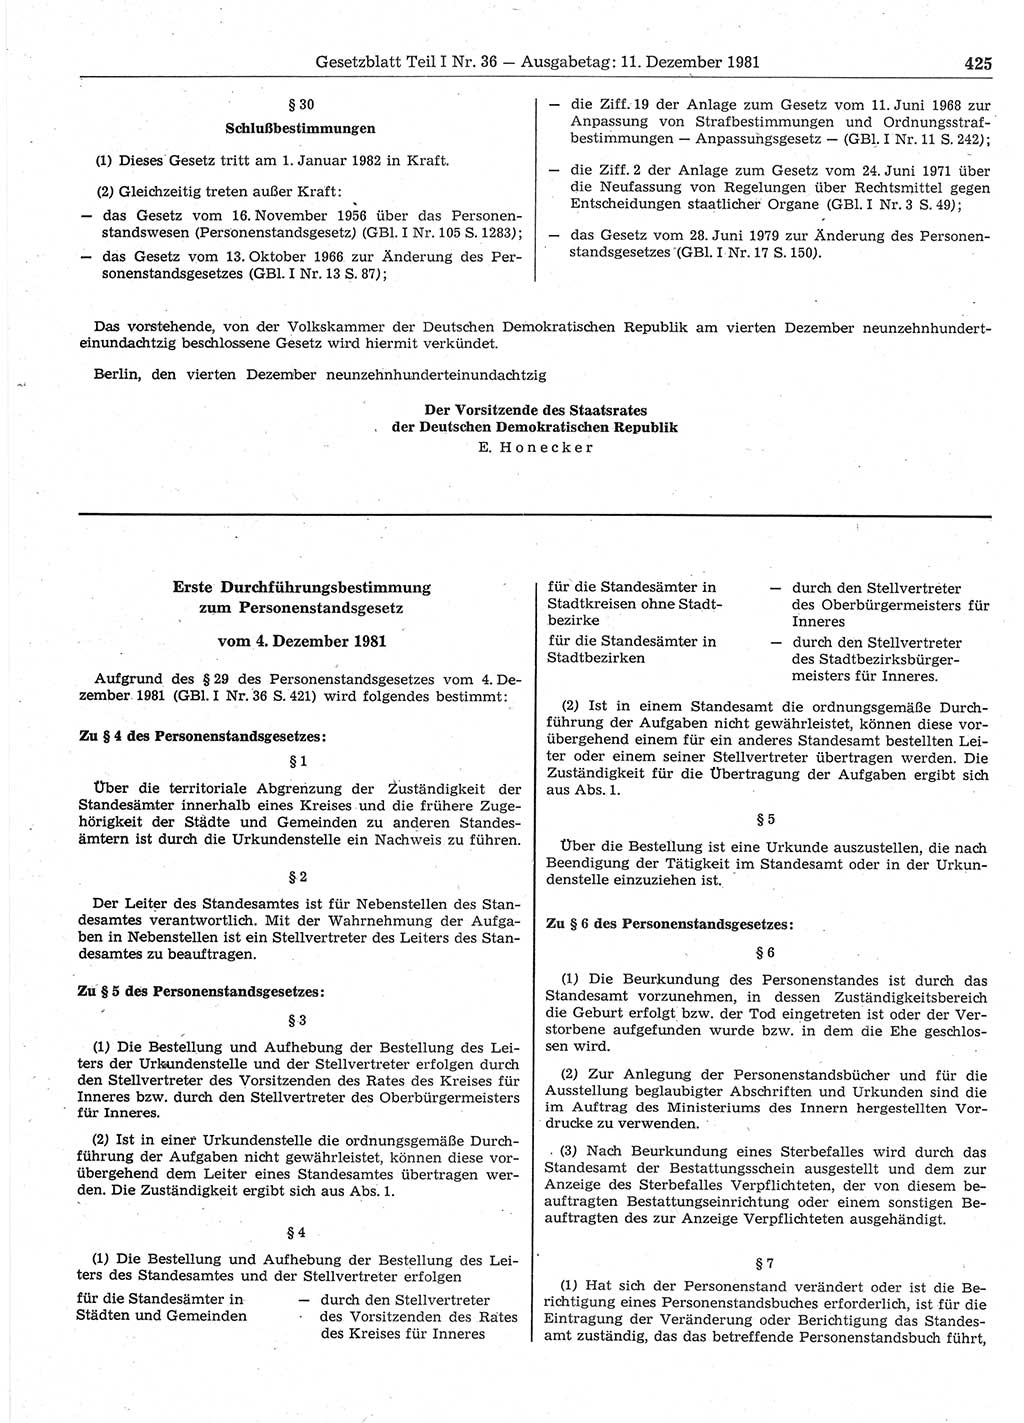 Gesetzblatt (GBl.) der Deutschen Demokratischen Republik (DDR) Teil Ⅰ 1981, Seite 425 (GBl. DDR Ⅰ 1981, S. 425)